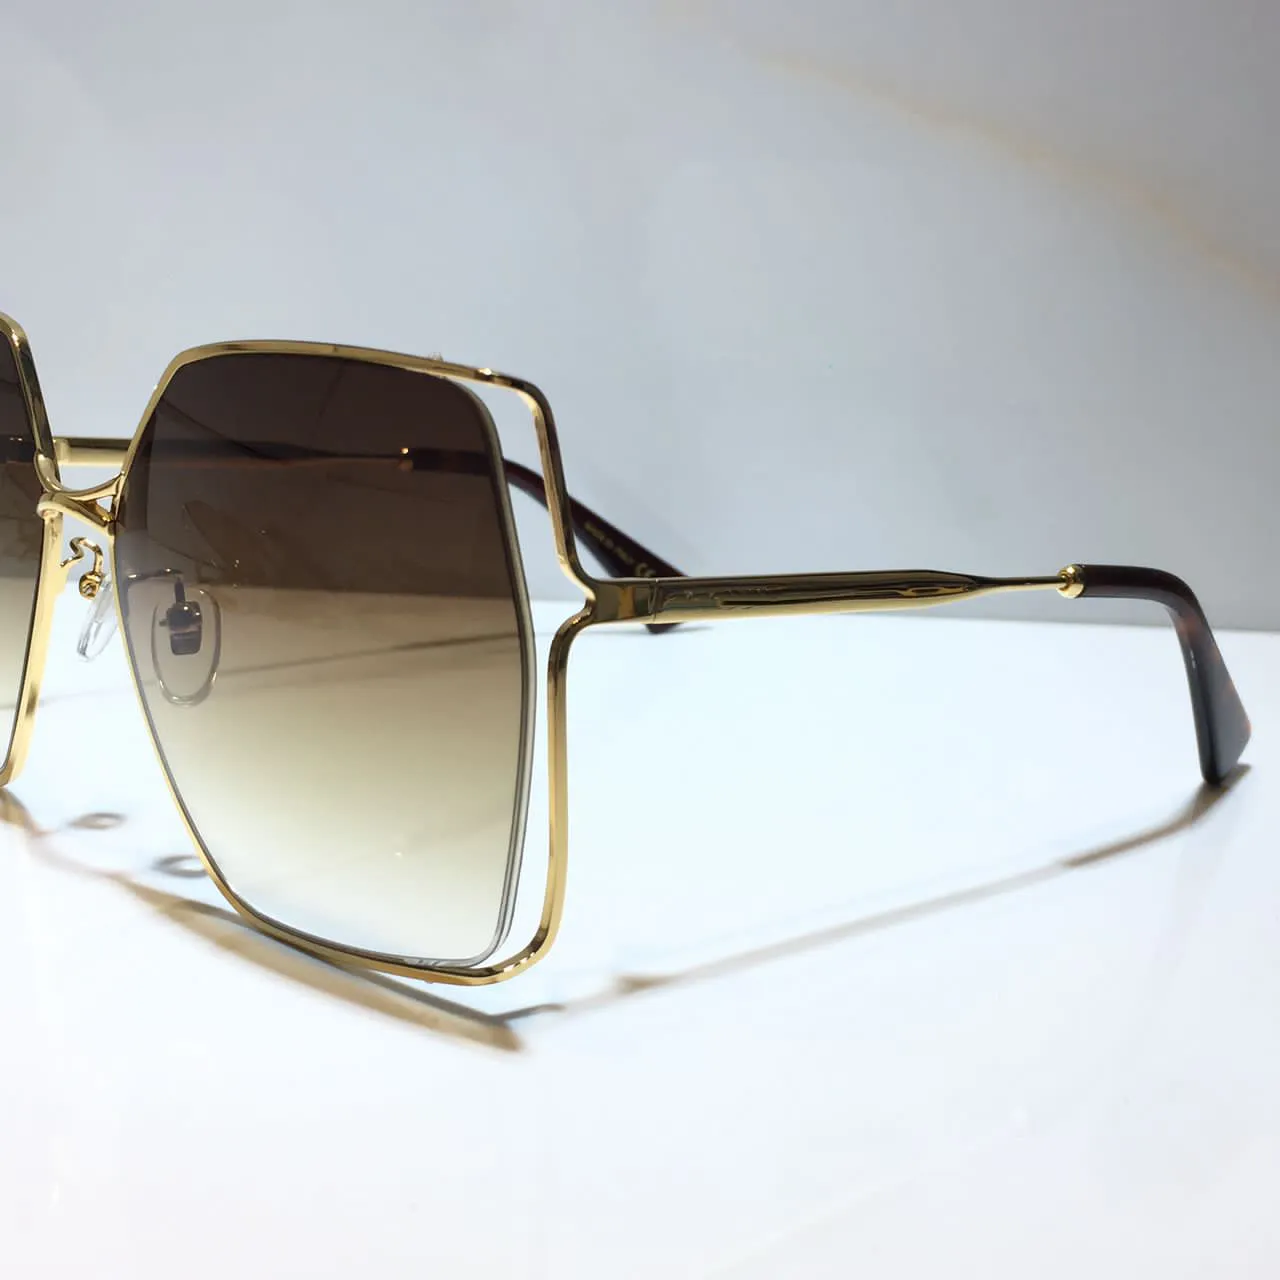 Occhiali da sole donne Classic Summer Fashion 0817 Stile in metallo e tela di plancia occhiali occhiali UV Protection Lens 0817S308M